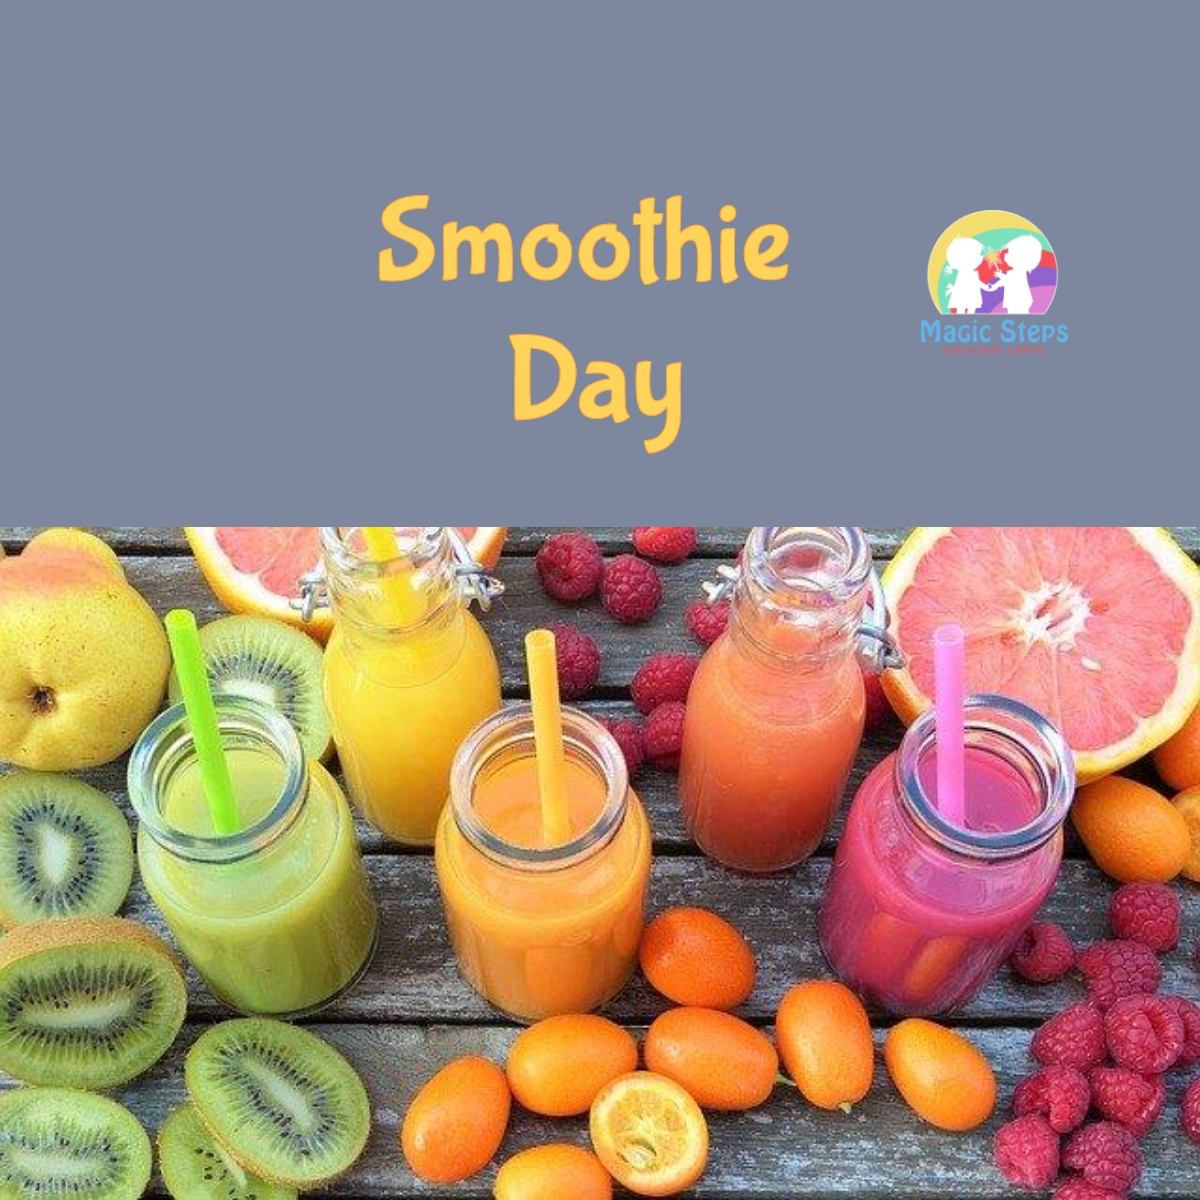 Smoothie Day- Thursday 1st September